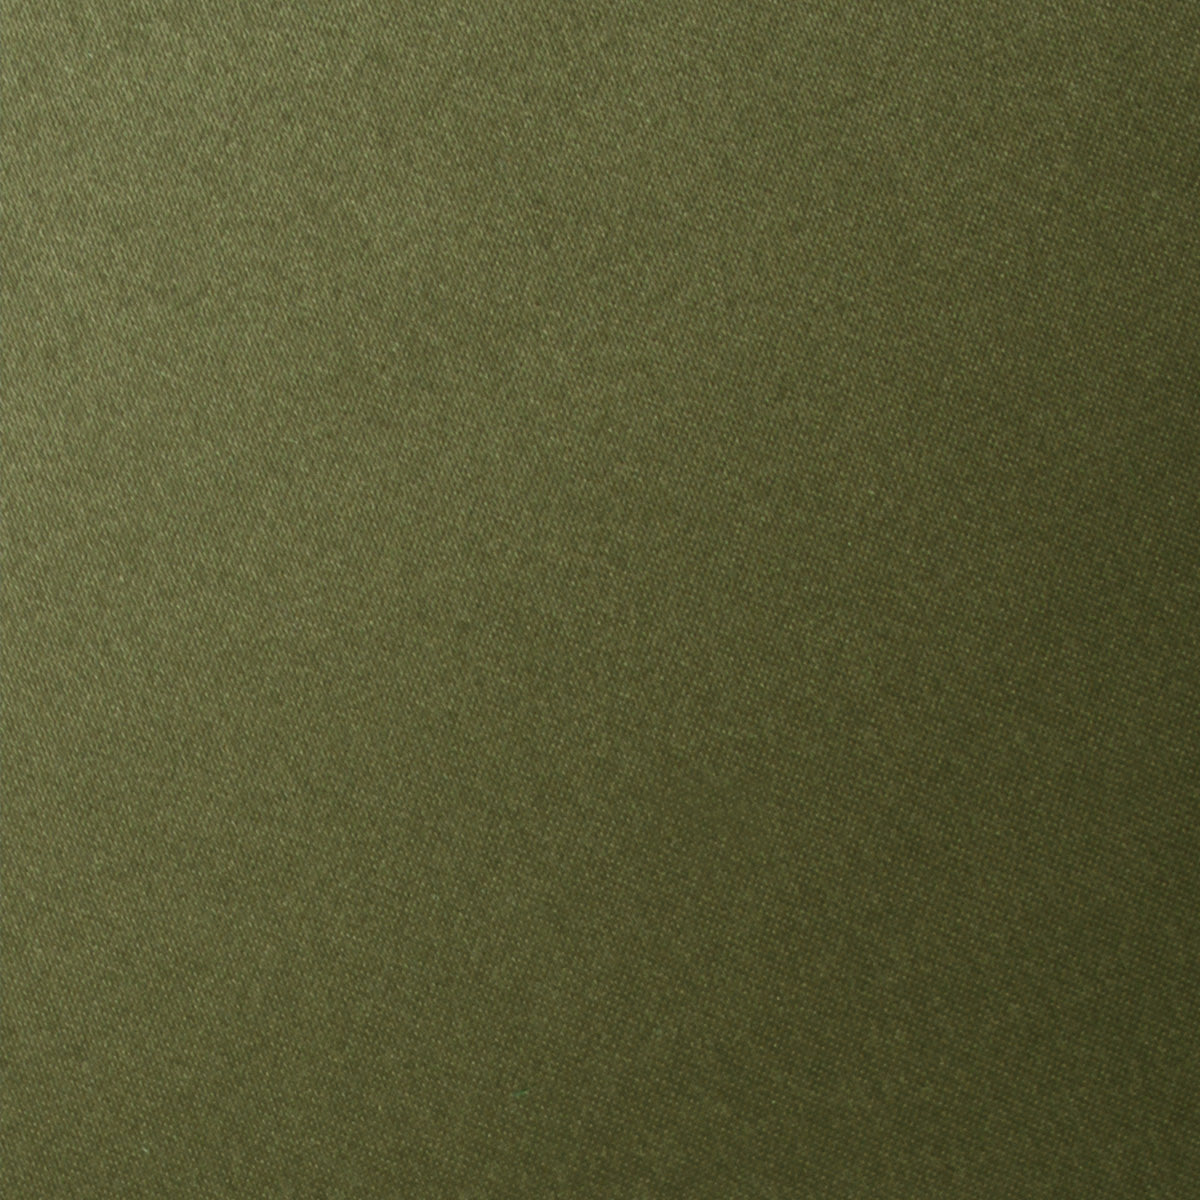 Olive Green Satin Necktie Fabric